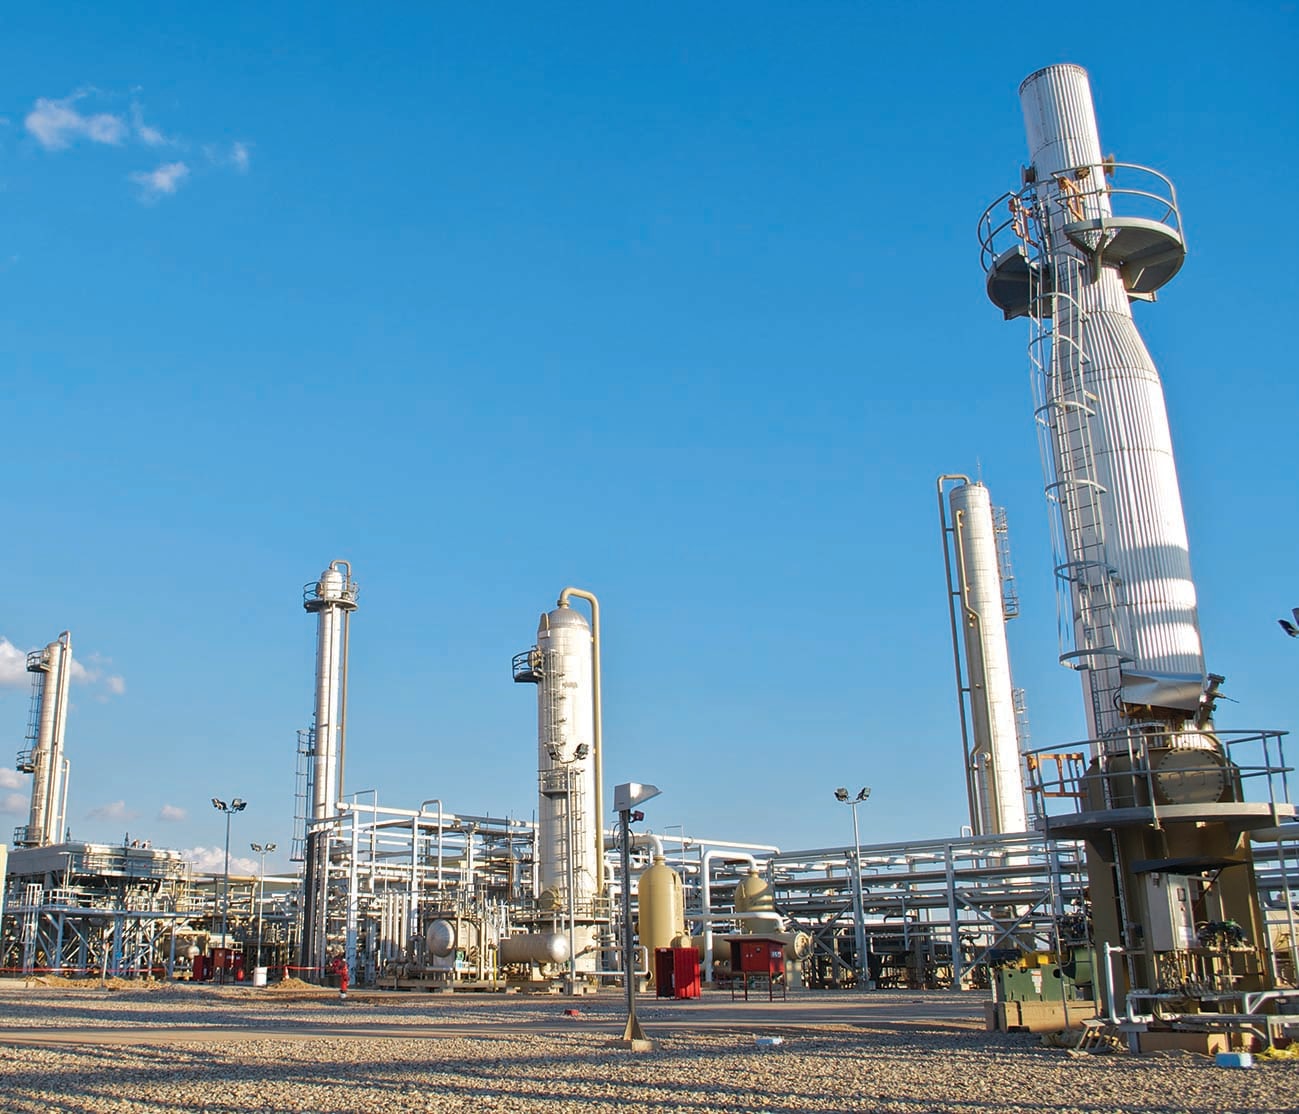 شركة إماراتية تتفق على إنتاج وبيع الغاز الطبيعي لكردستان لمدة 20 عاما